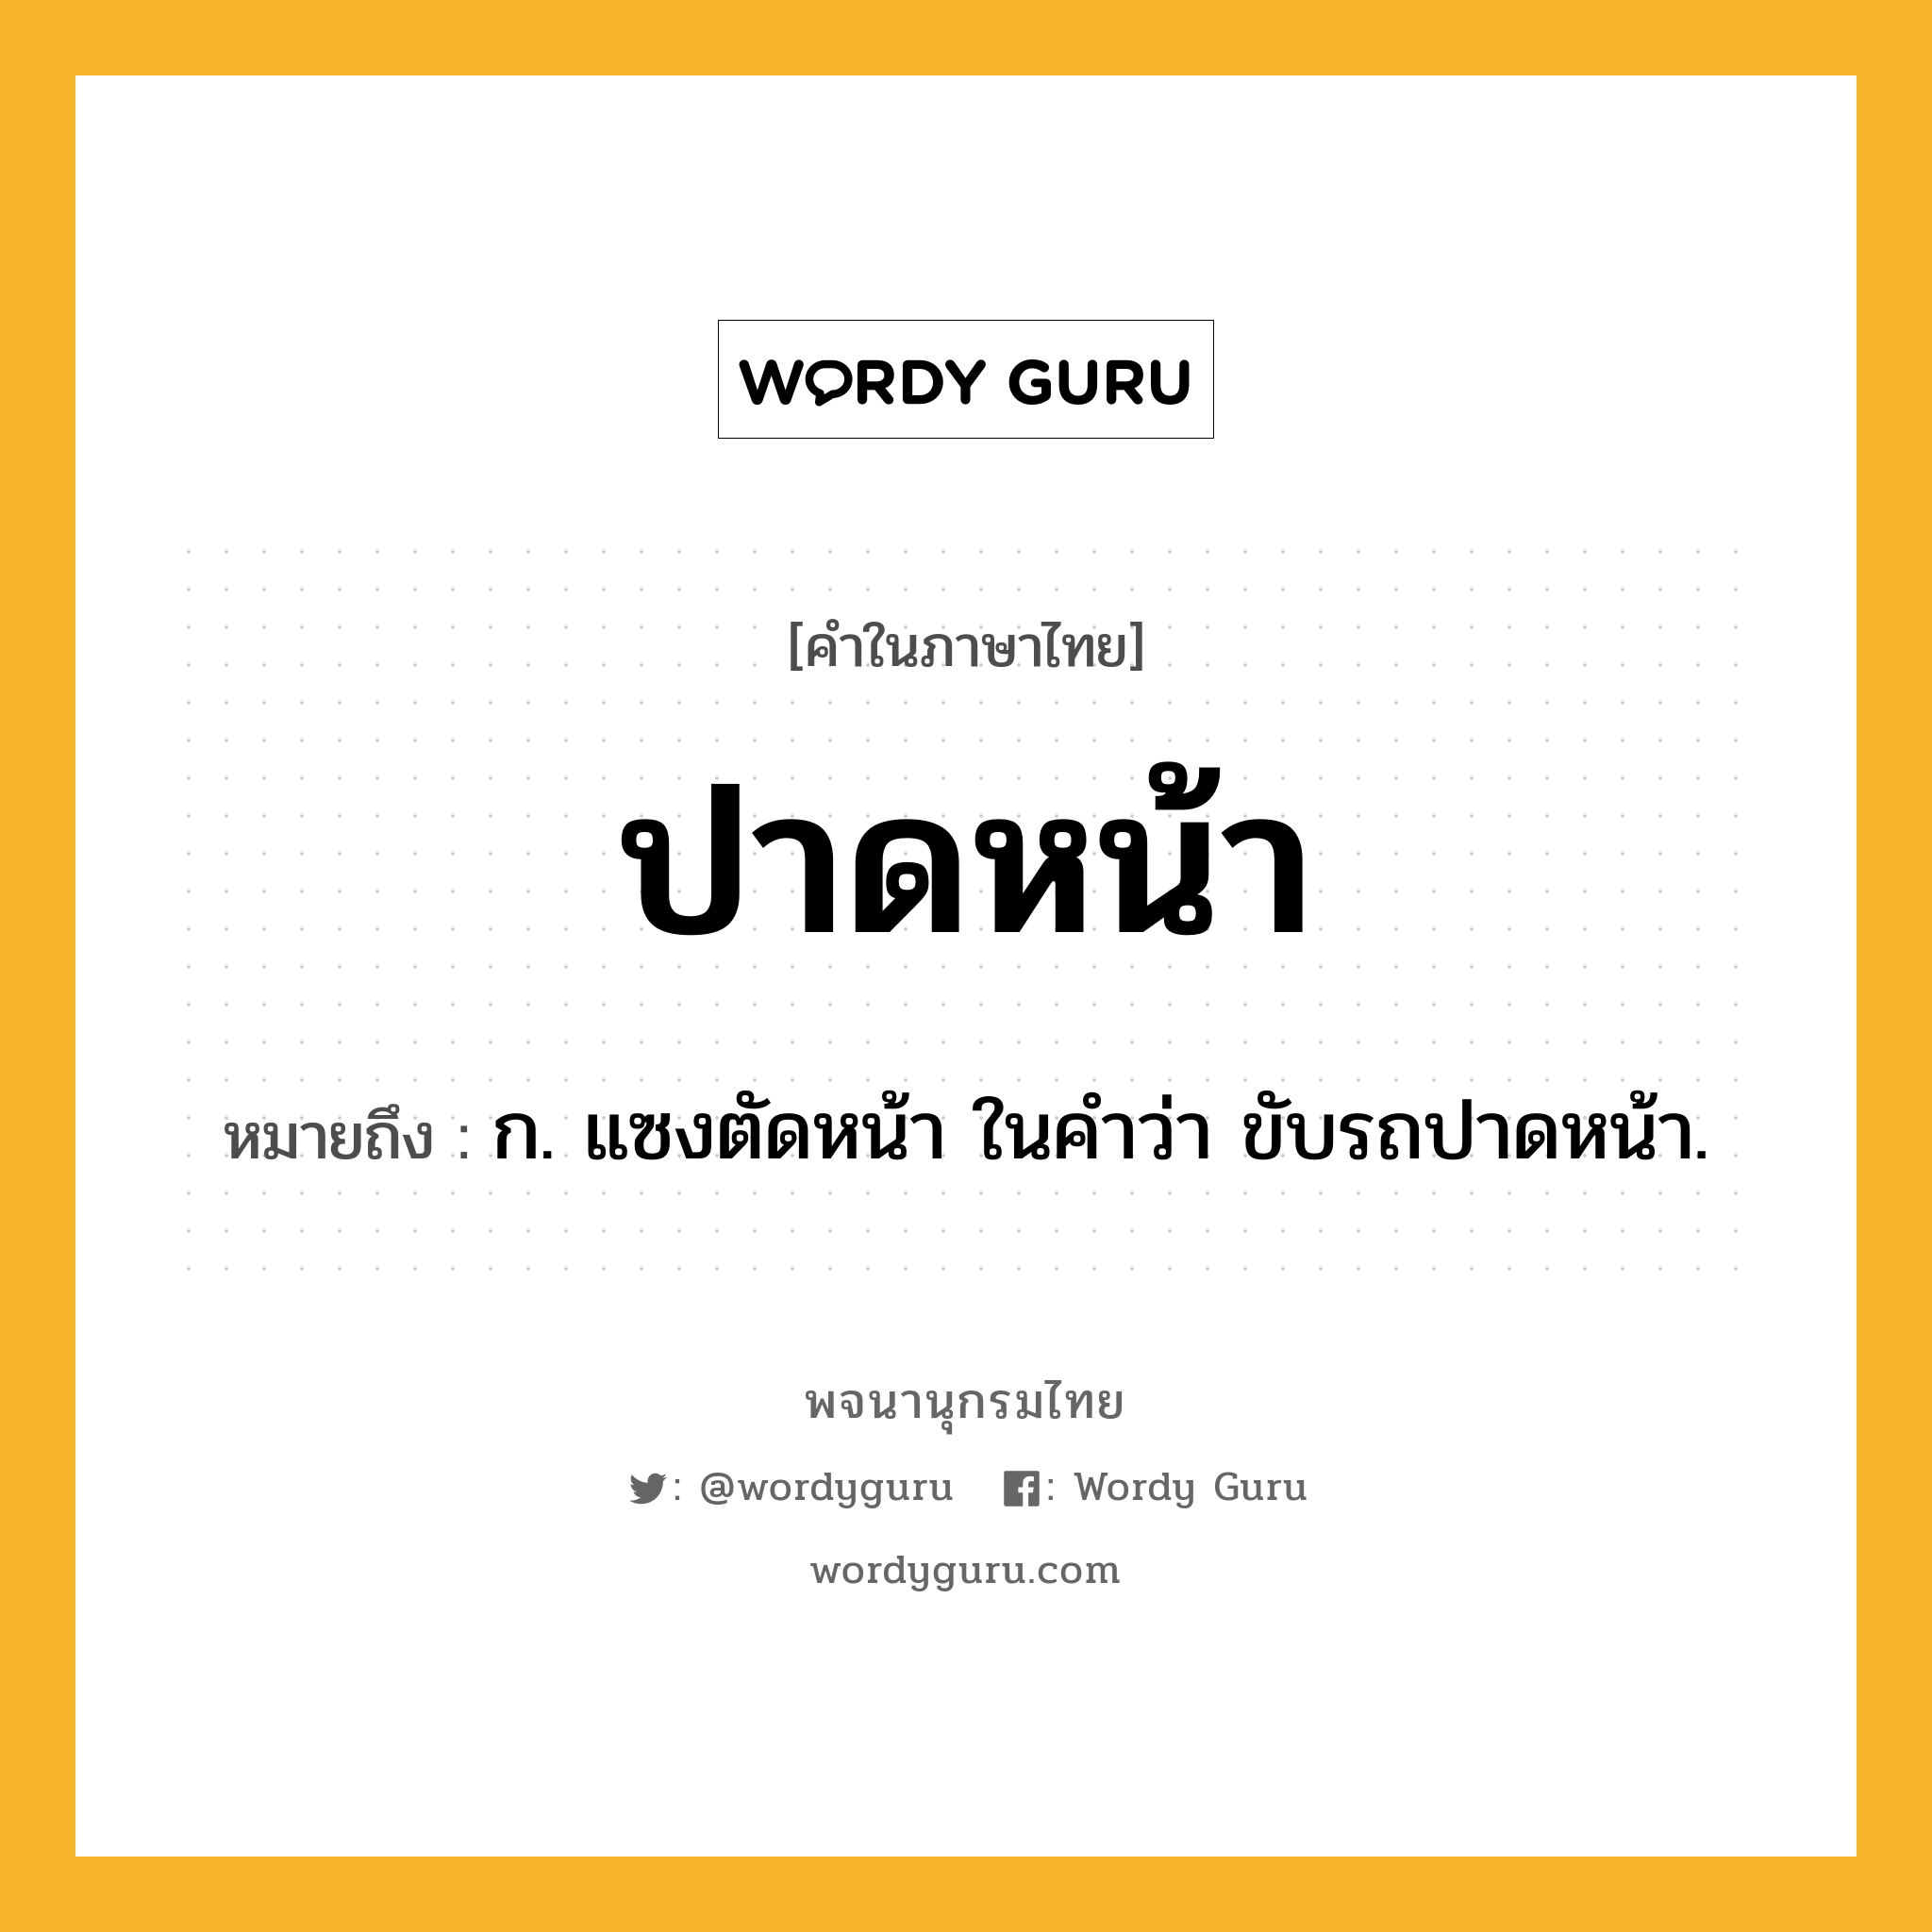 ปาดหน้า หมายถึงอะไร?, คำในภาษาไทย ปาดหน้า หมายถึง ก. แซงตัดหน้า ในคำว่า ขับรถปาดหน้า.